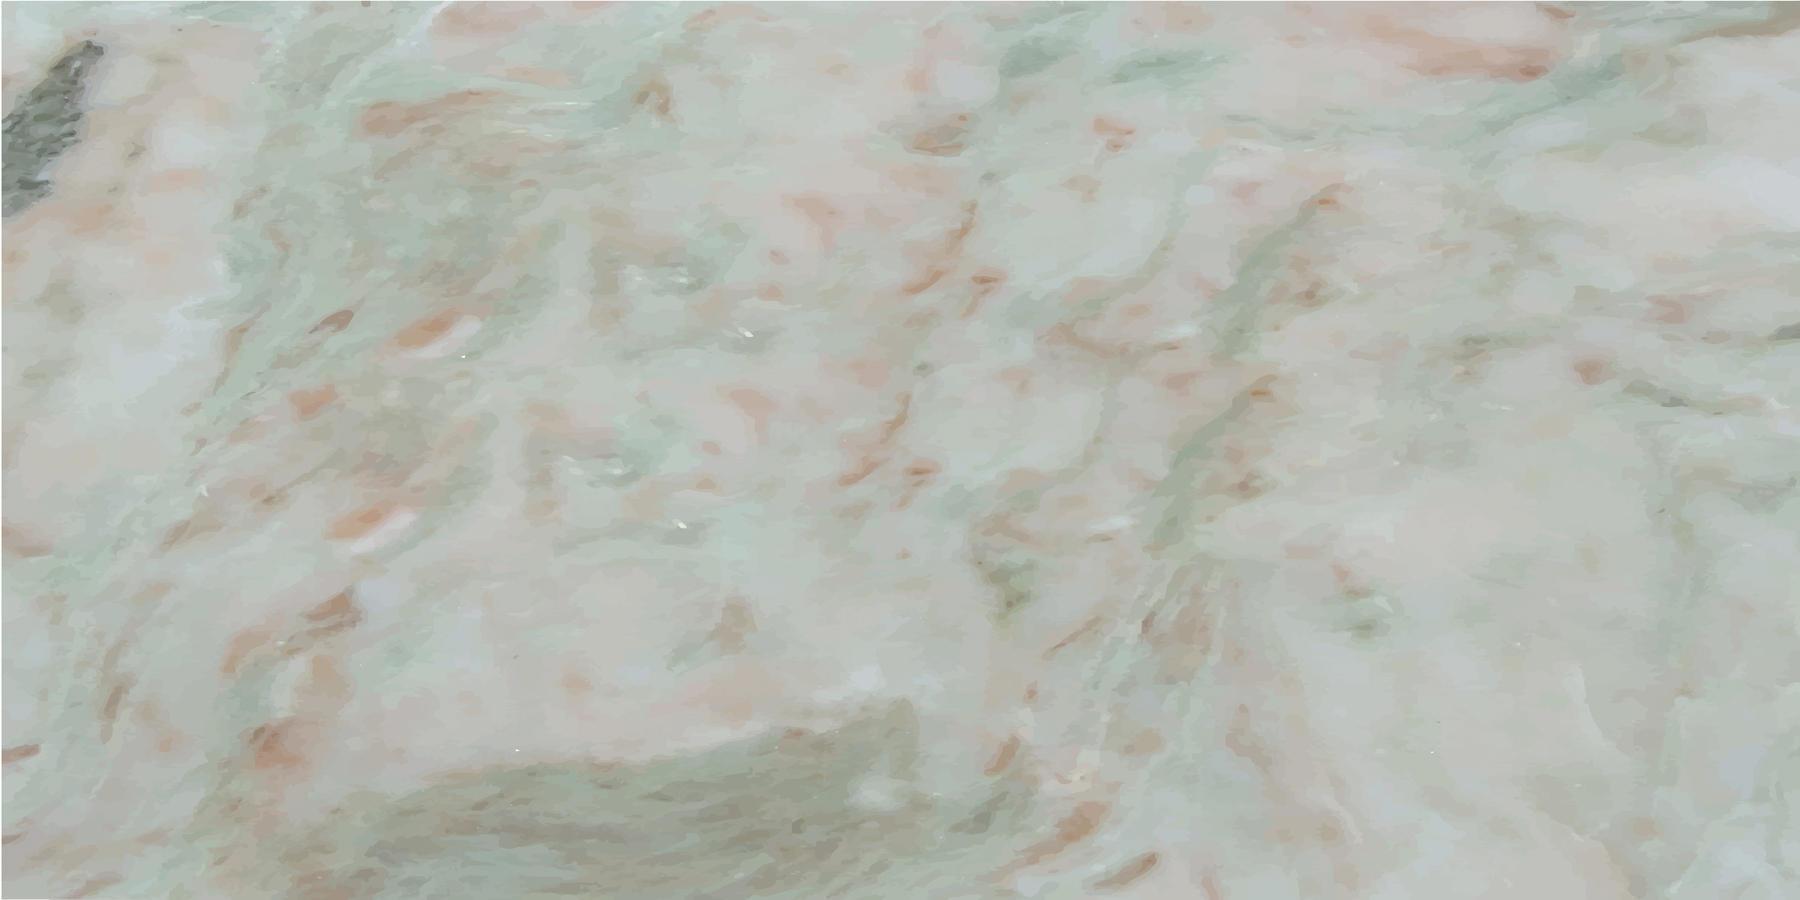 Naturstein Textur Marmor Hintergrund vektor